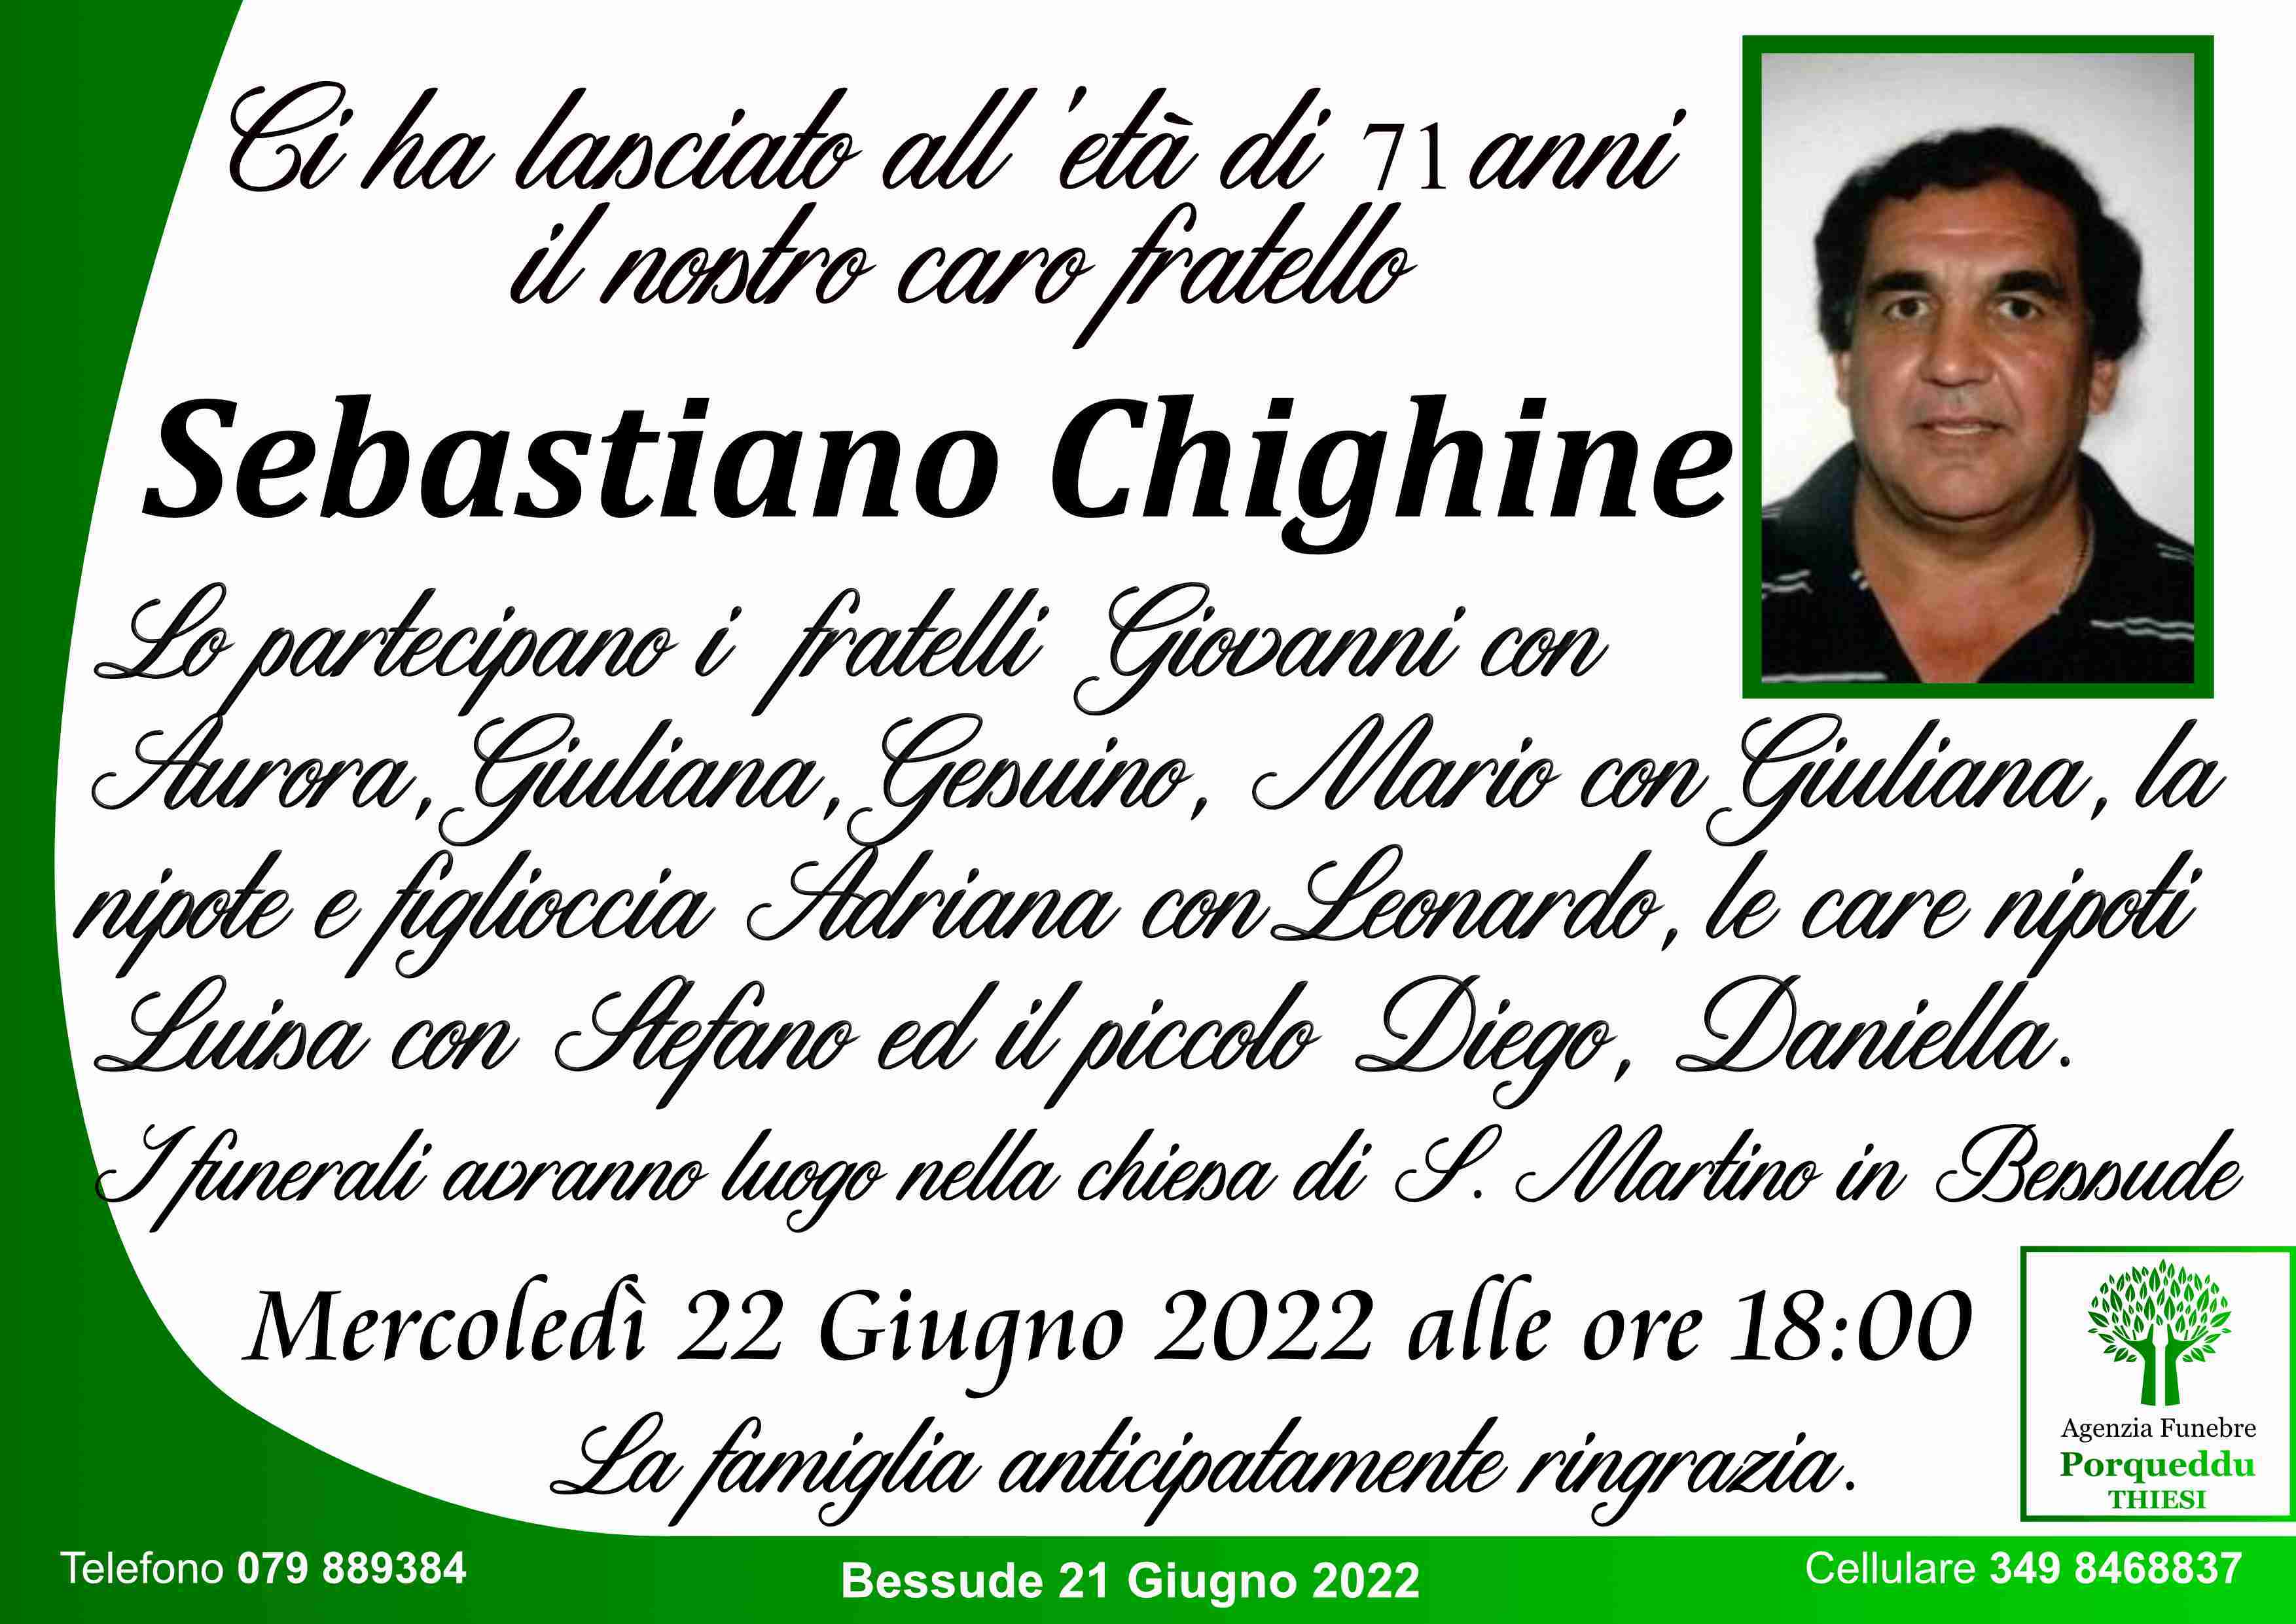 Sebastiano Chighine